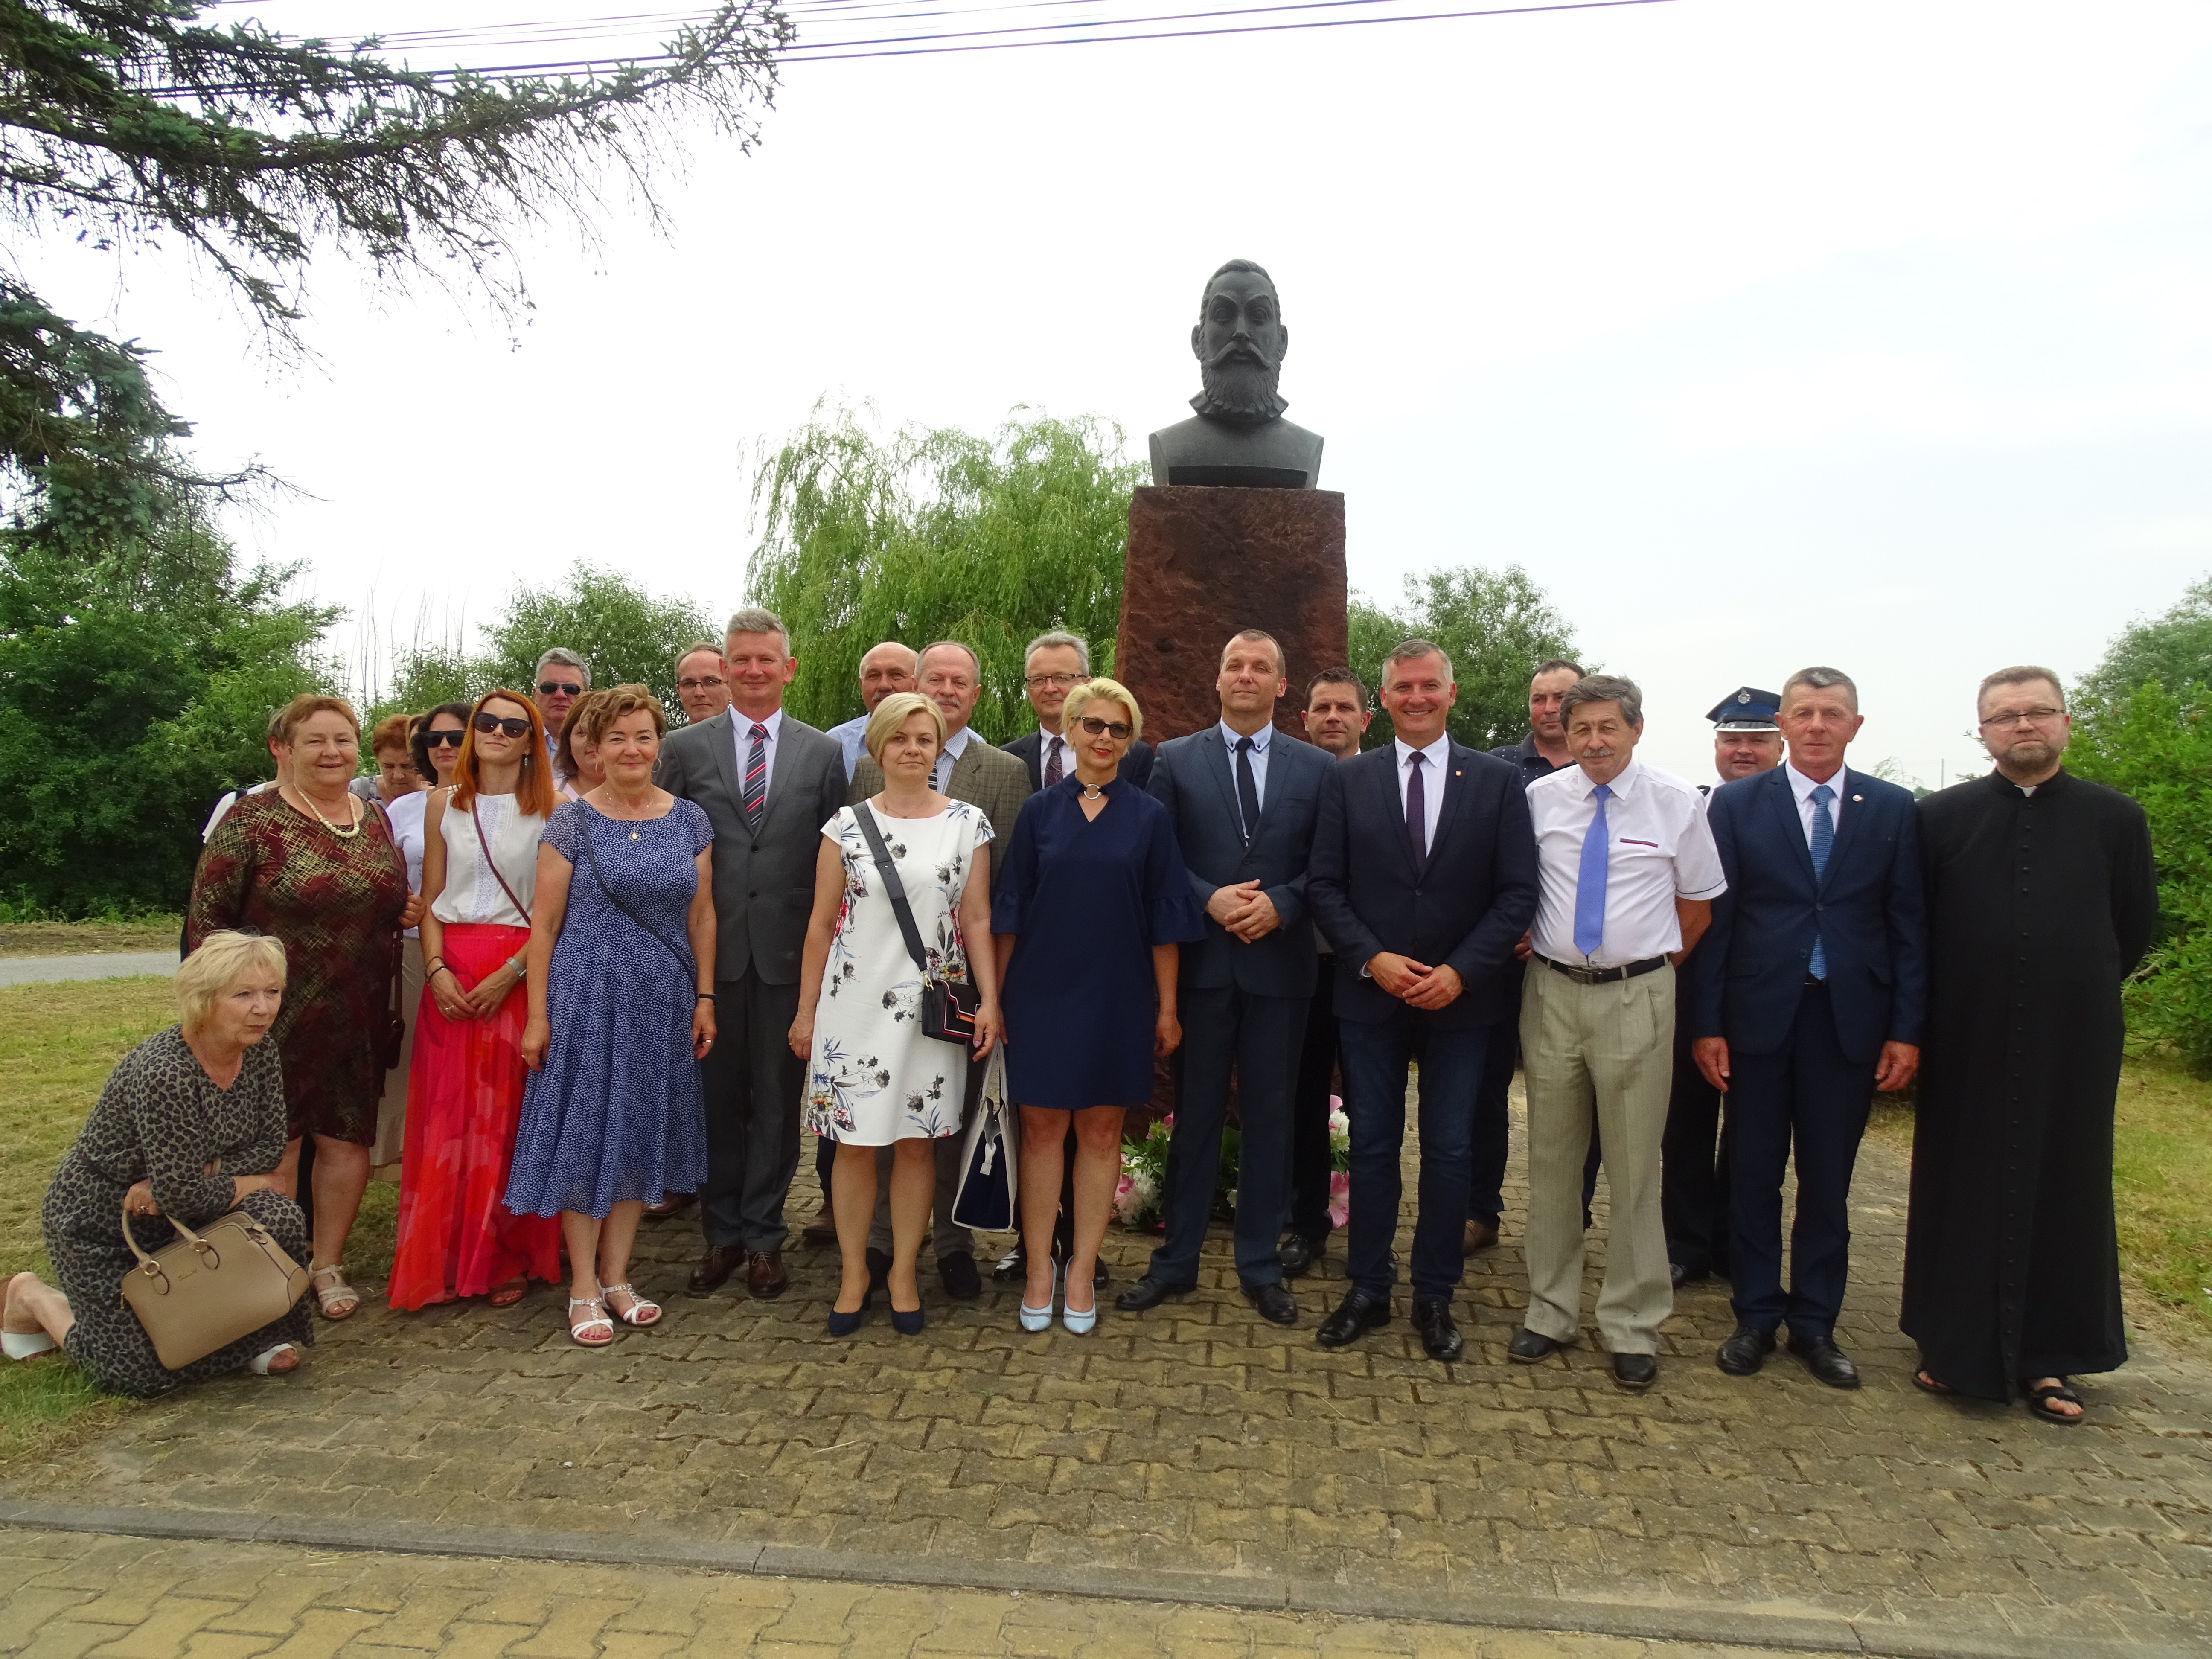 Uczestnicy uroczystości oddali hołd Janowi Kochanowskiemu składając kwiaty przy jego pomniku.